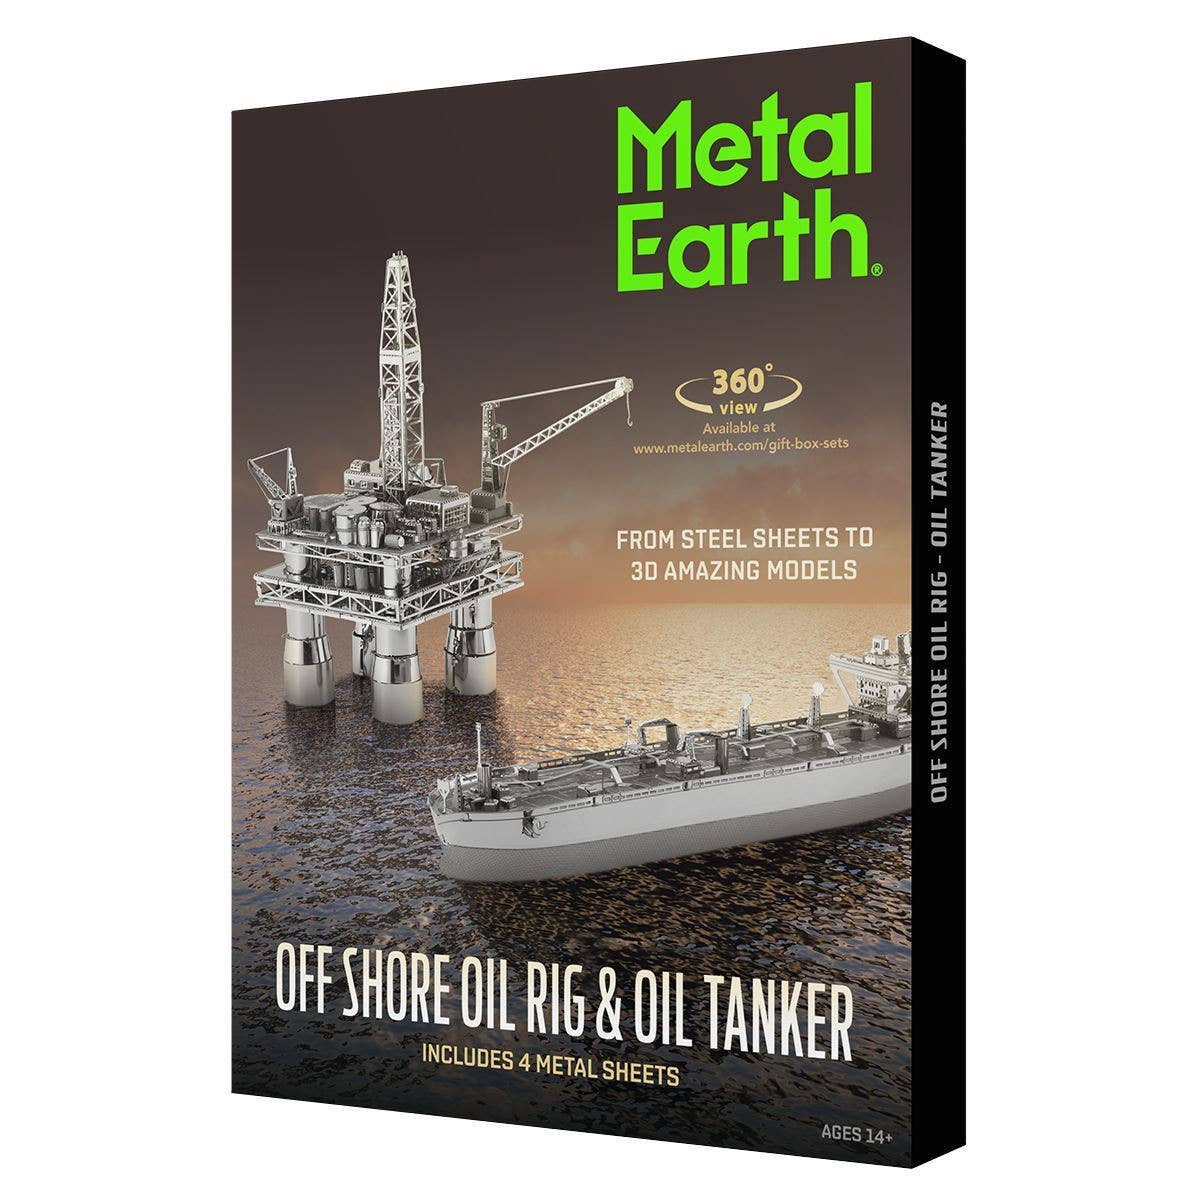 Offshore Oil Rig & Oil Tanker Box Gift Set